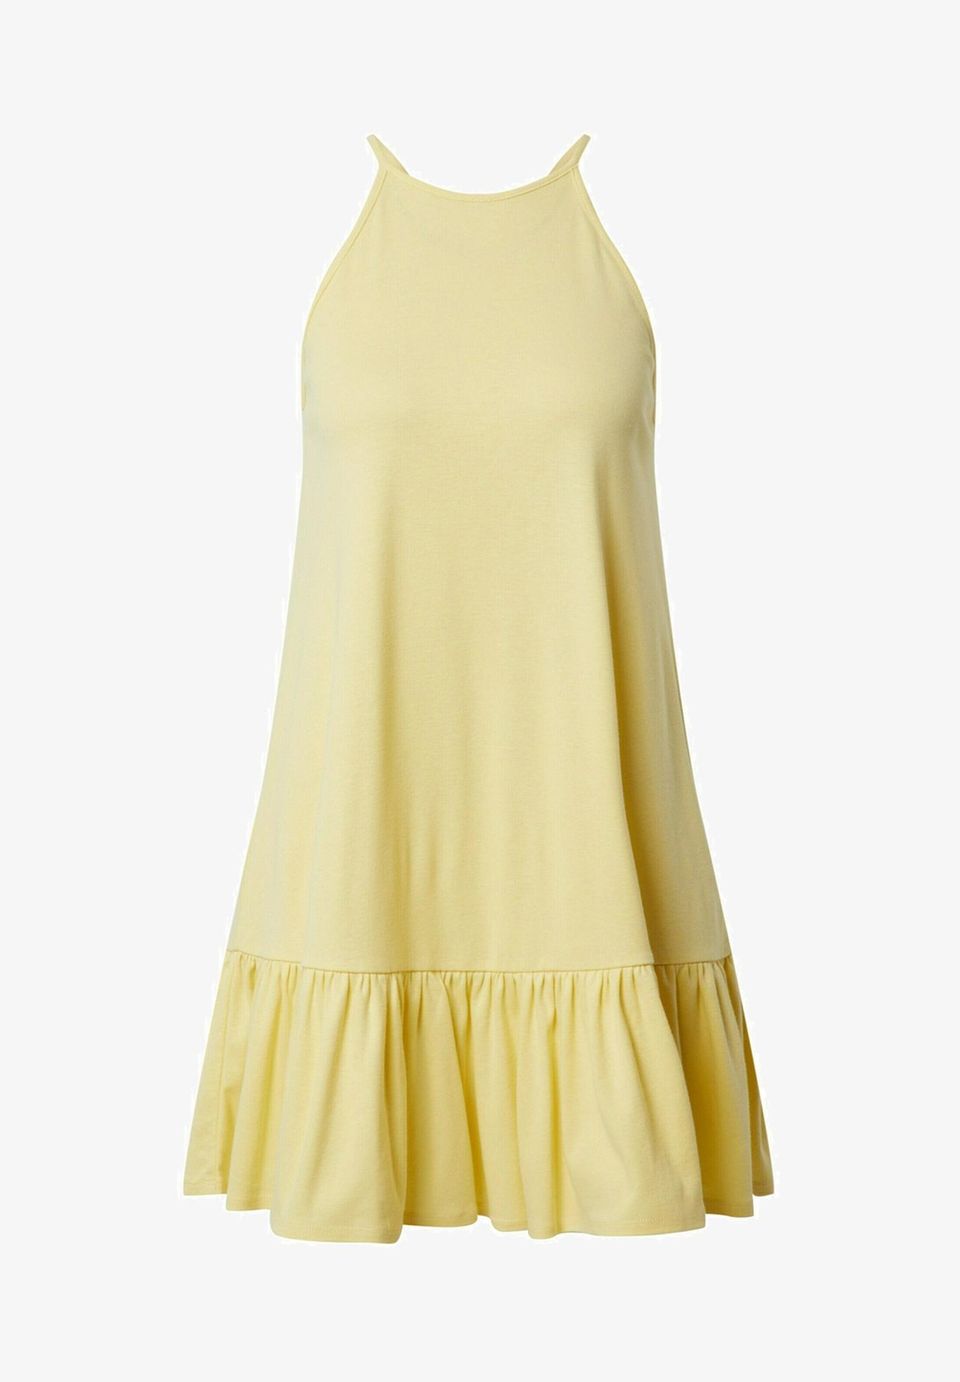 Ein hochgeschlossenes Minikleid in knalligem Gelbton – damit kann der Sommer kommen. Von Edited, kostet ca. 40 Euro.